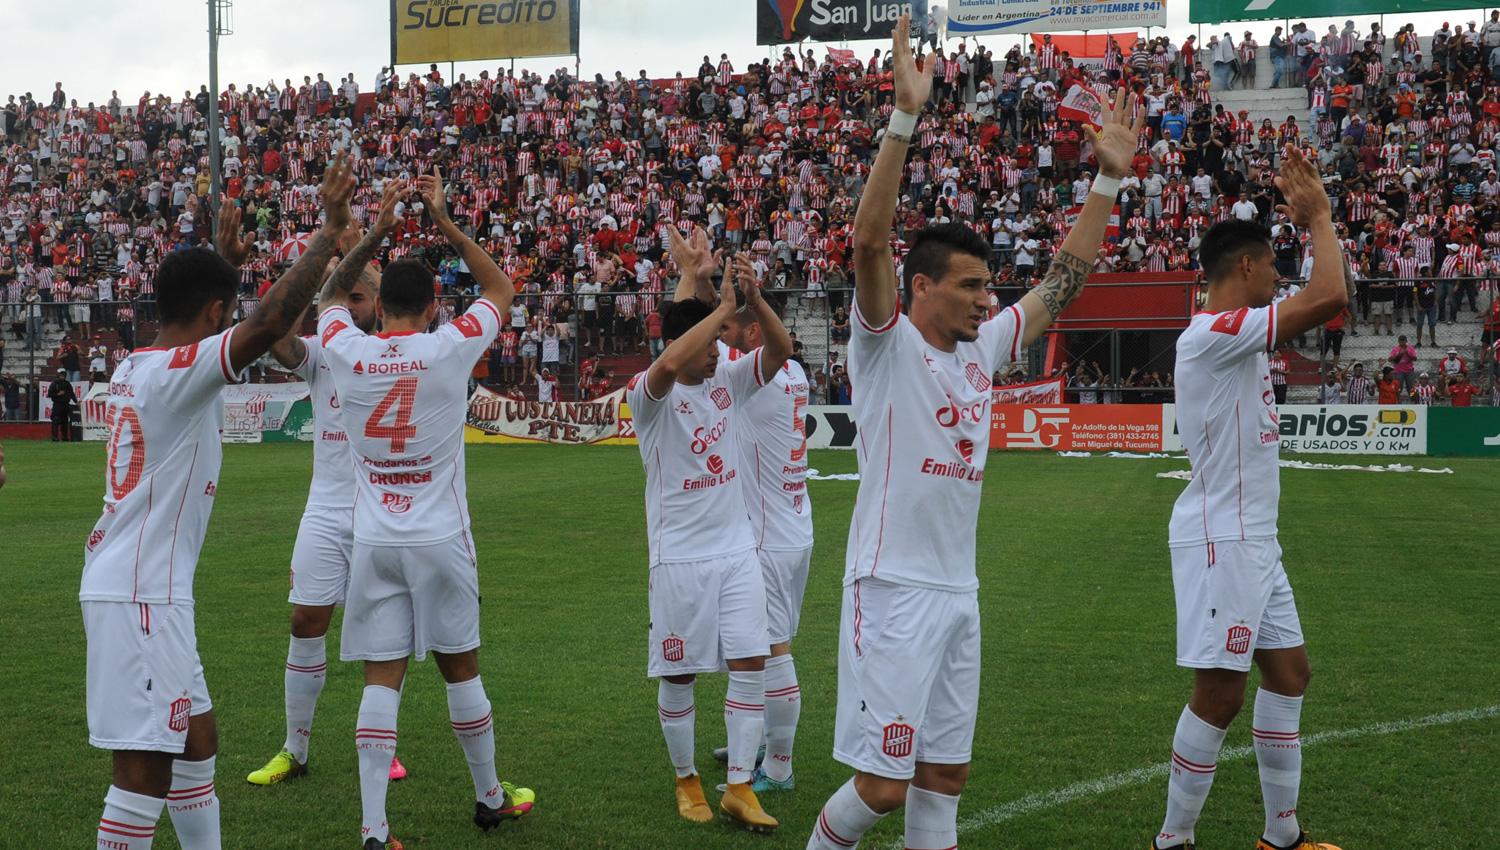 Lo más destacado de la agenda deportiva: San Martín debutará en un nuevo torneo de la B Nacional